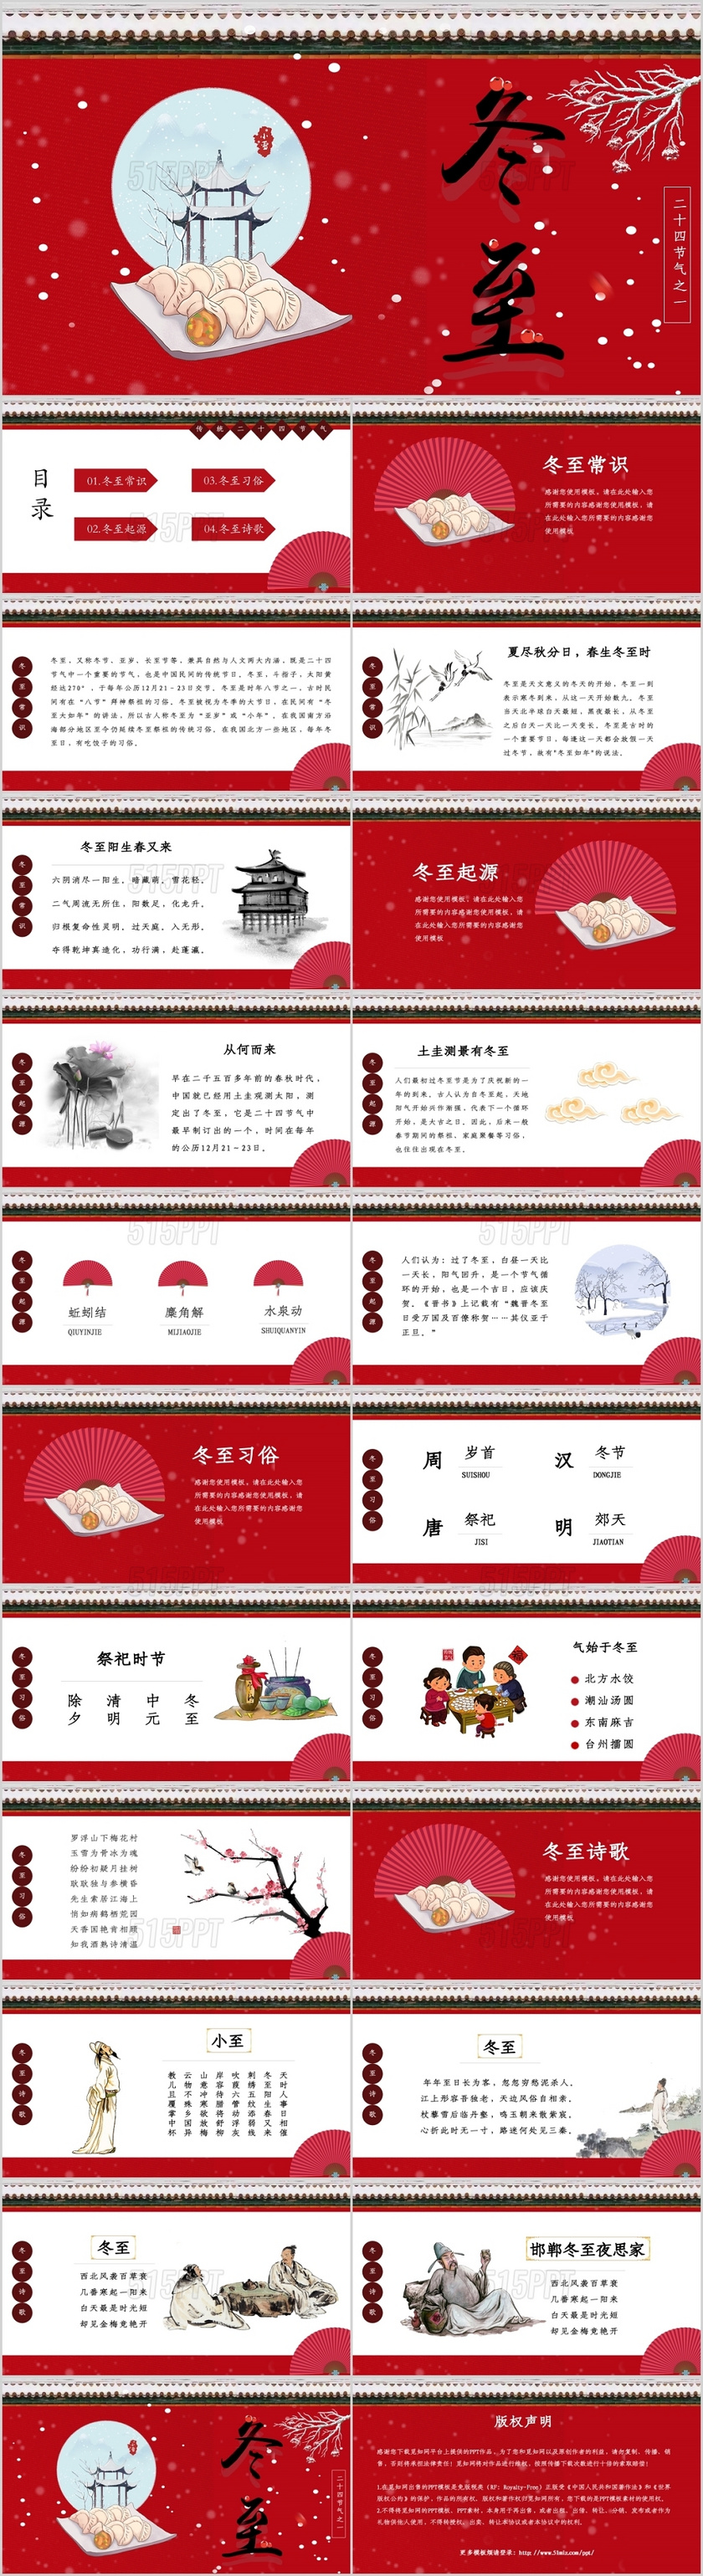 红色中国风二十四节气之冬至介绍饺子文化PPT模板